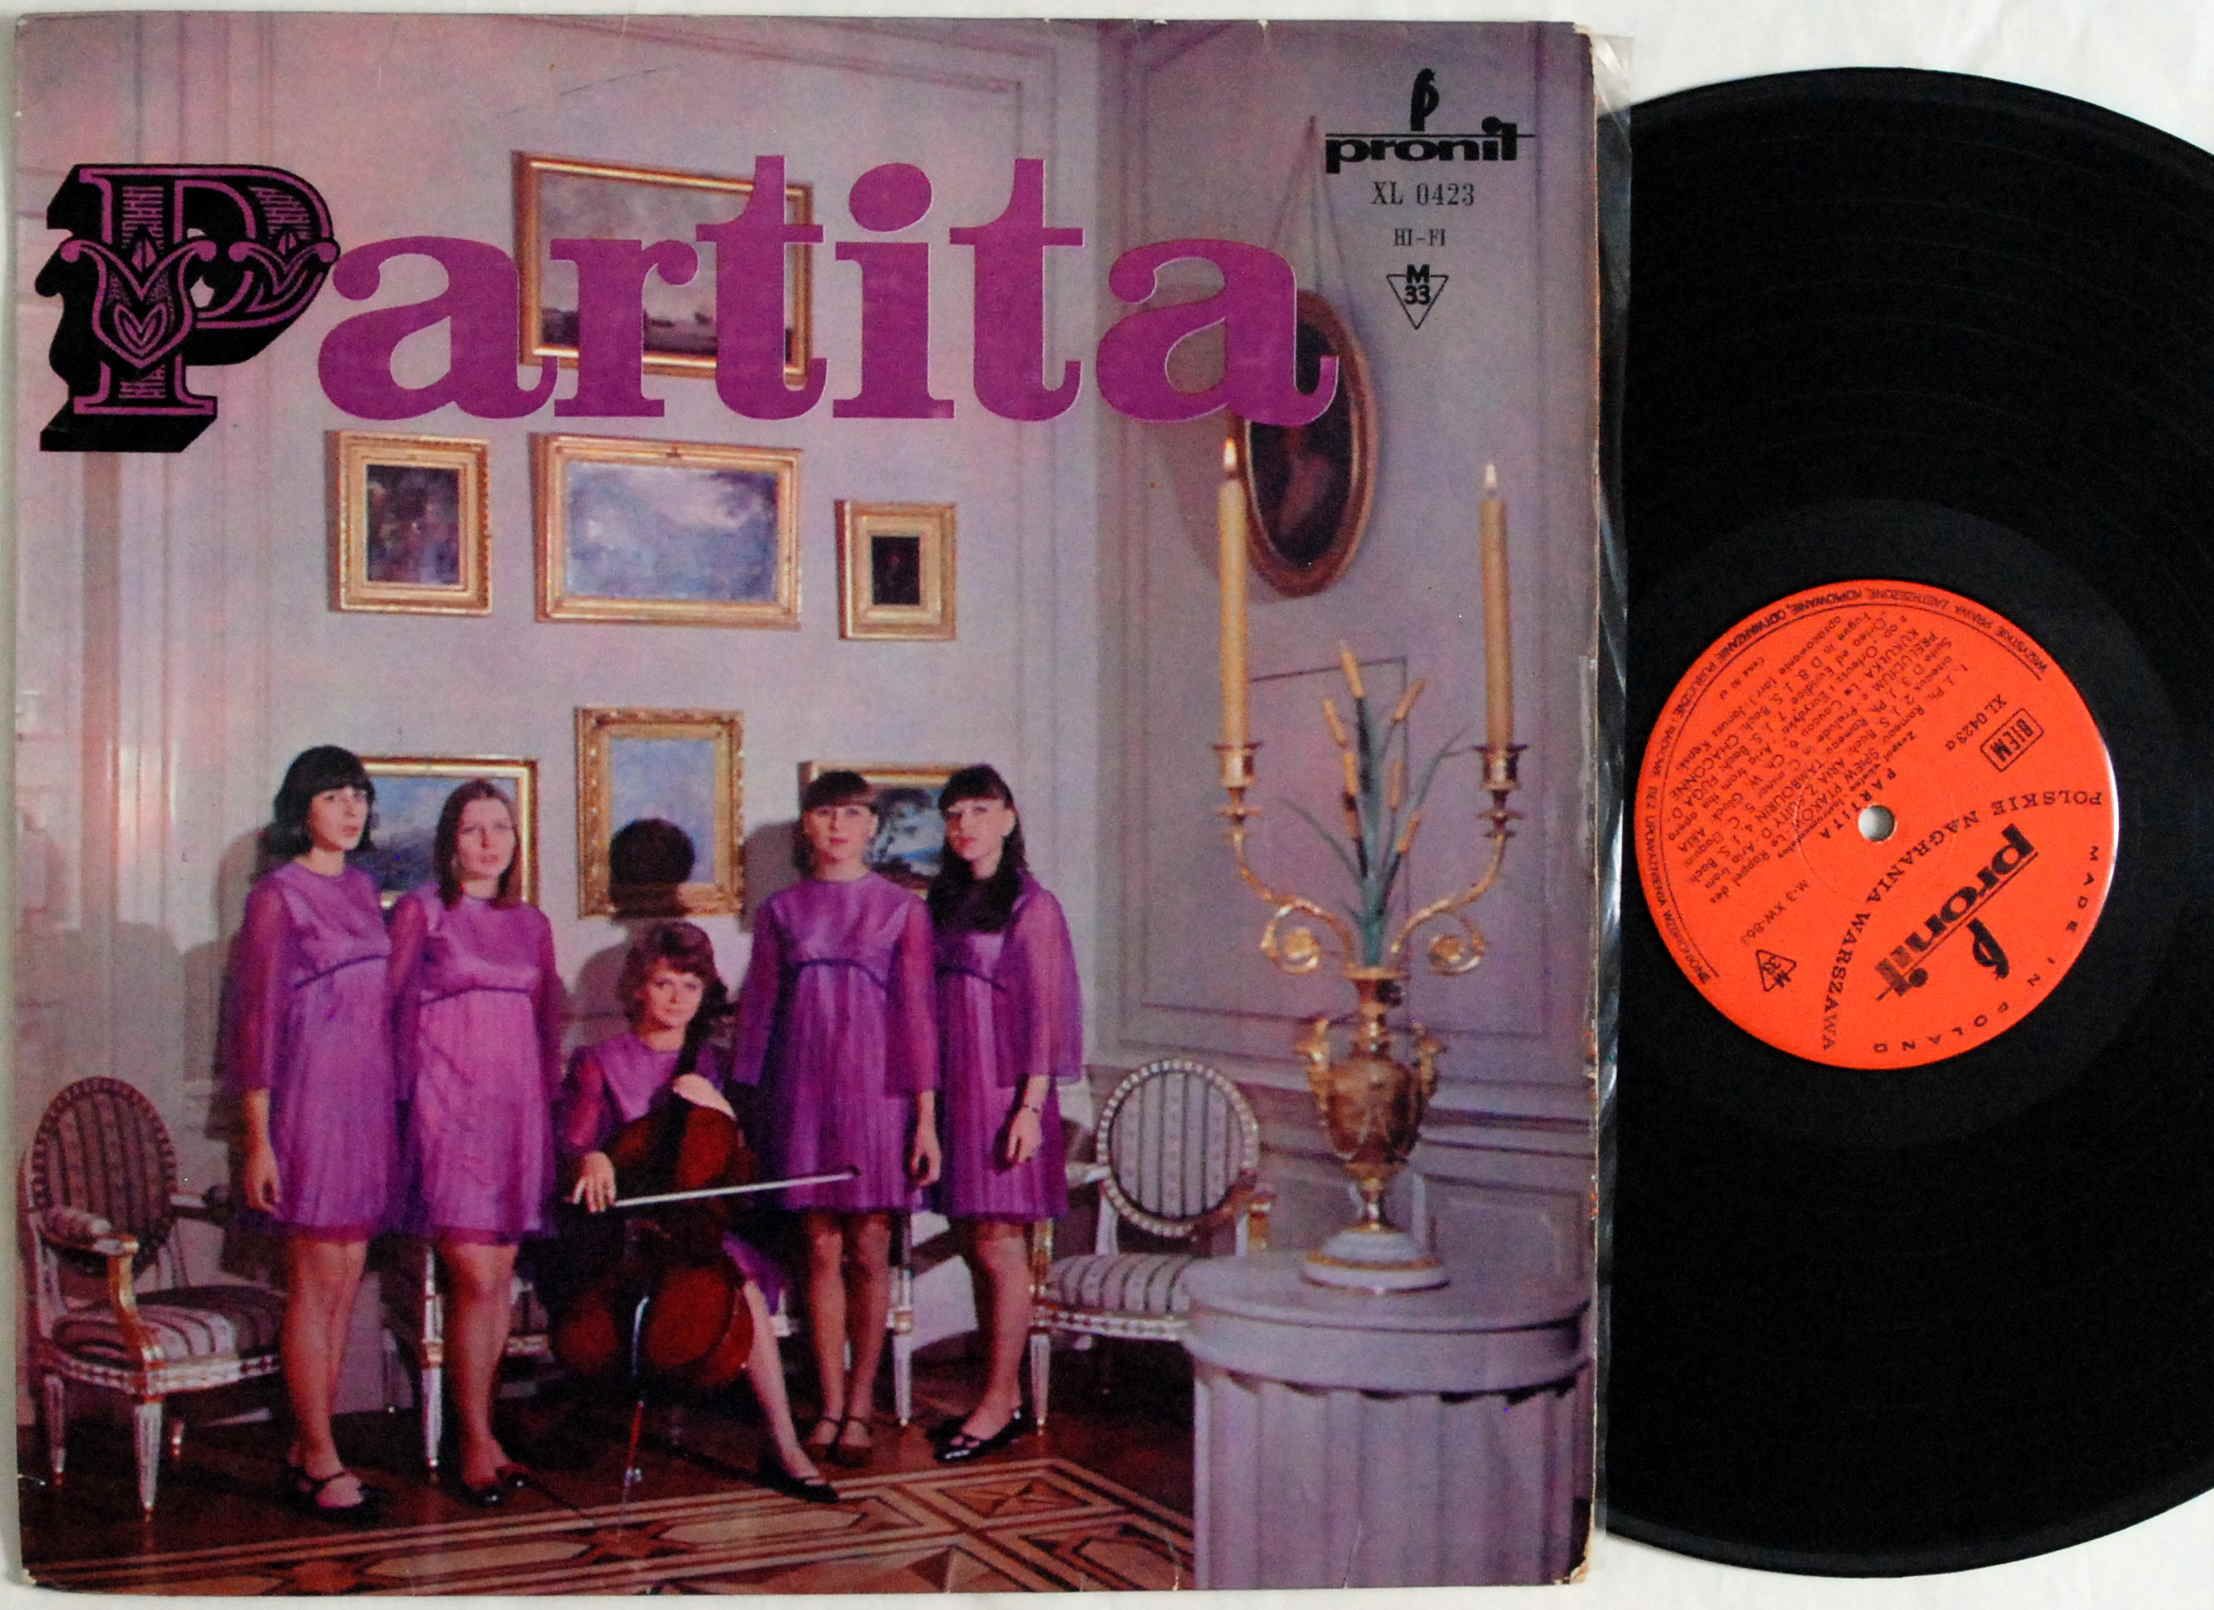 Partita - Partita (Pronit – XL 0423) MONO 1967r.